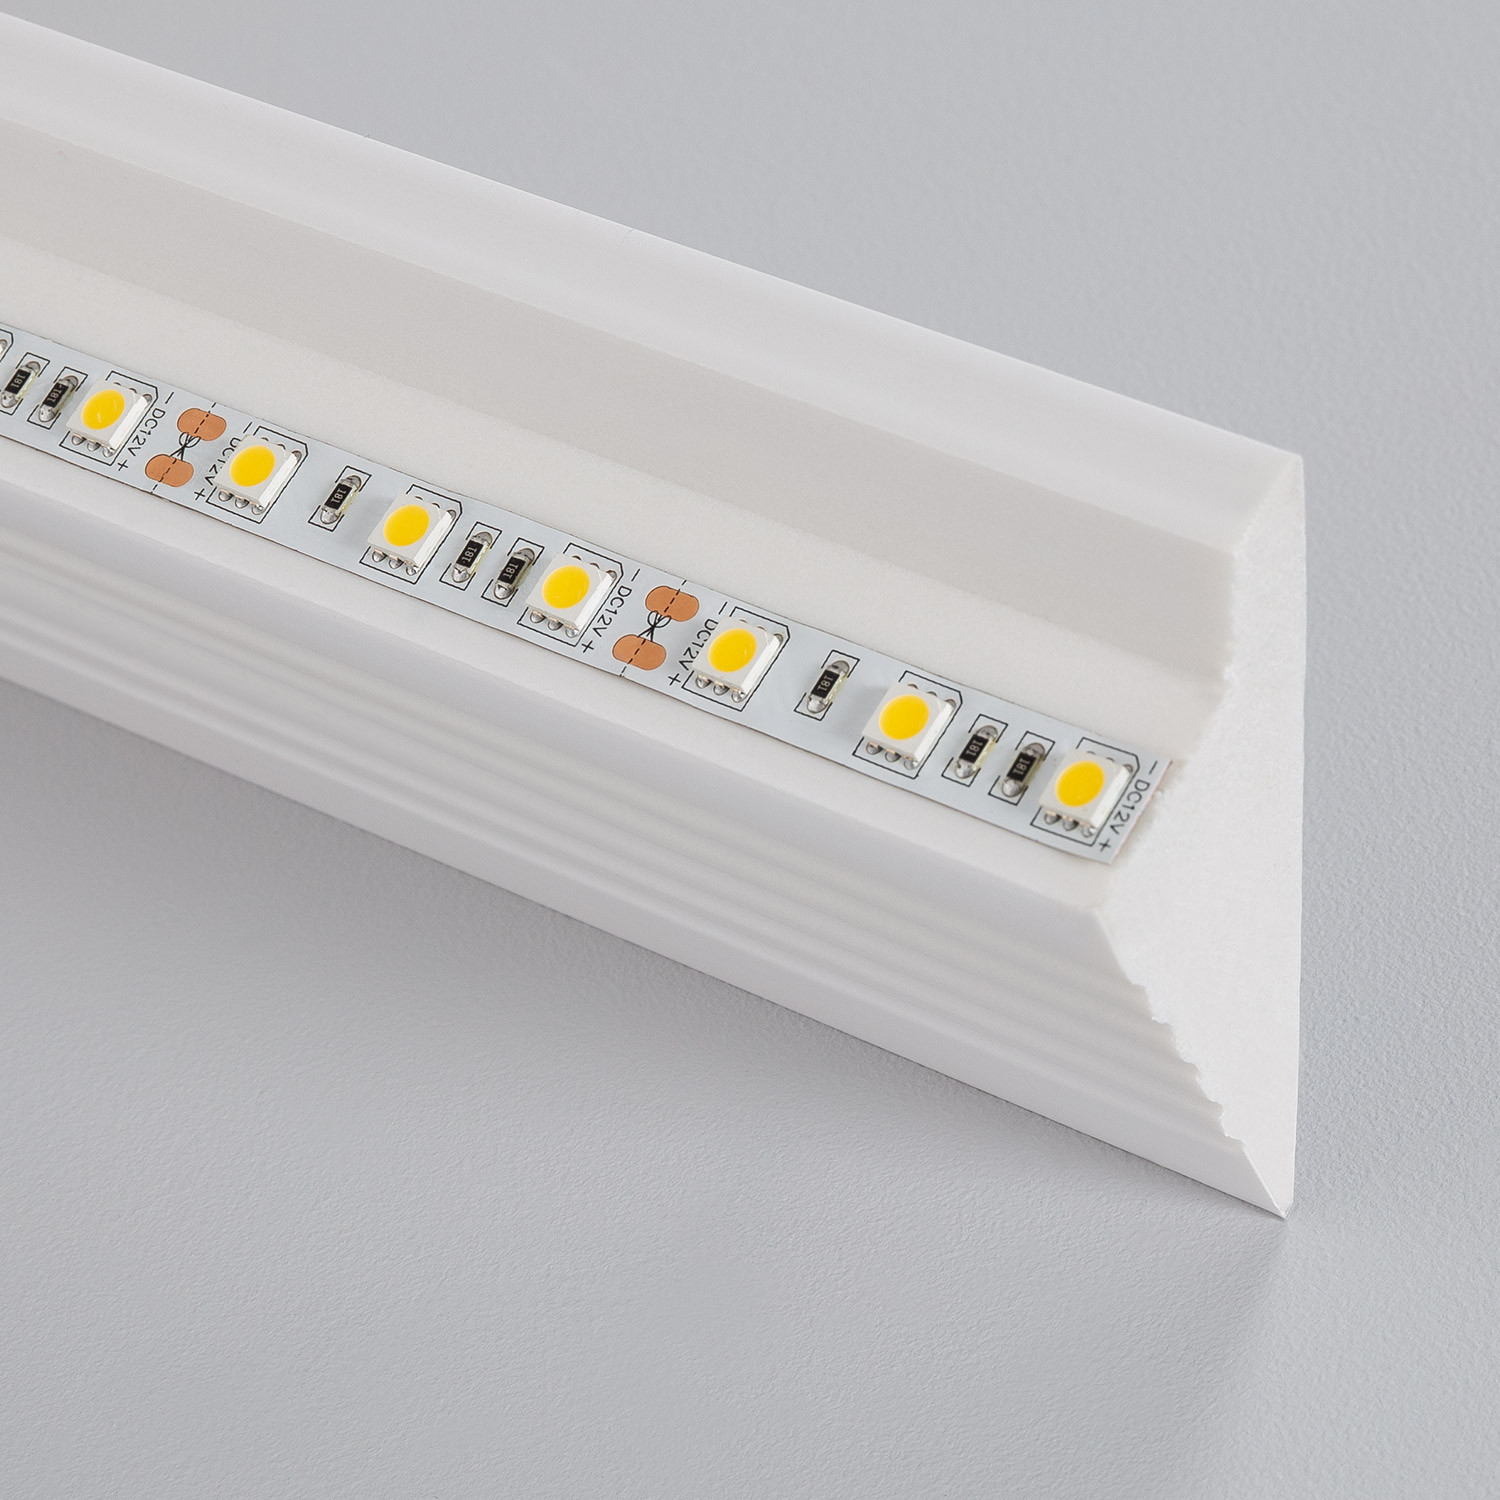 ▷ Molduras para la iluminación lineal con tiras led - Pro